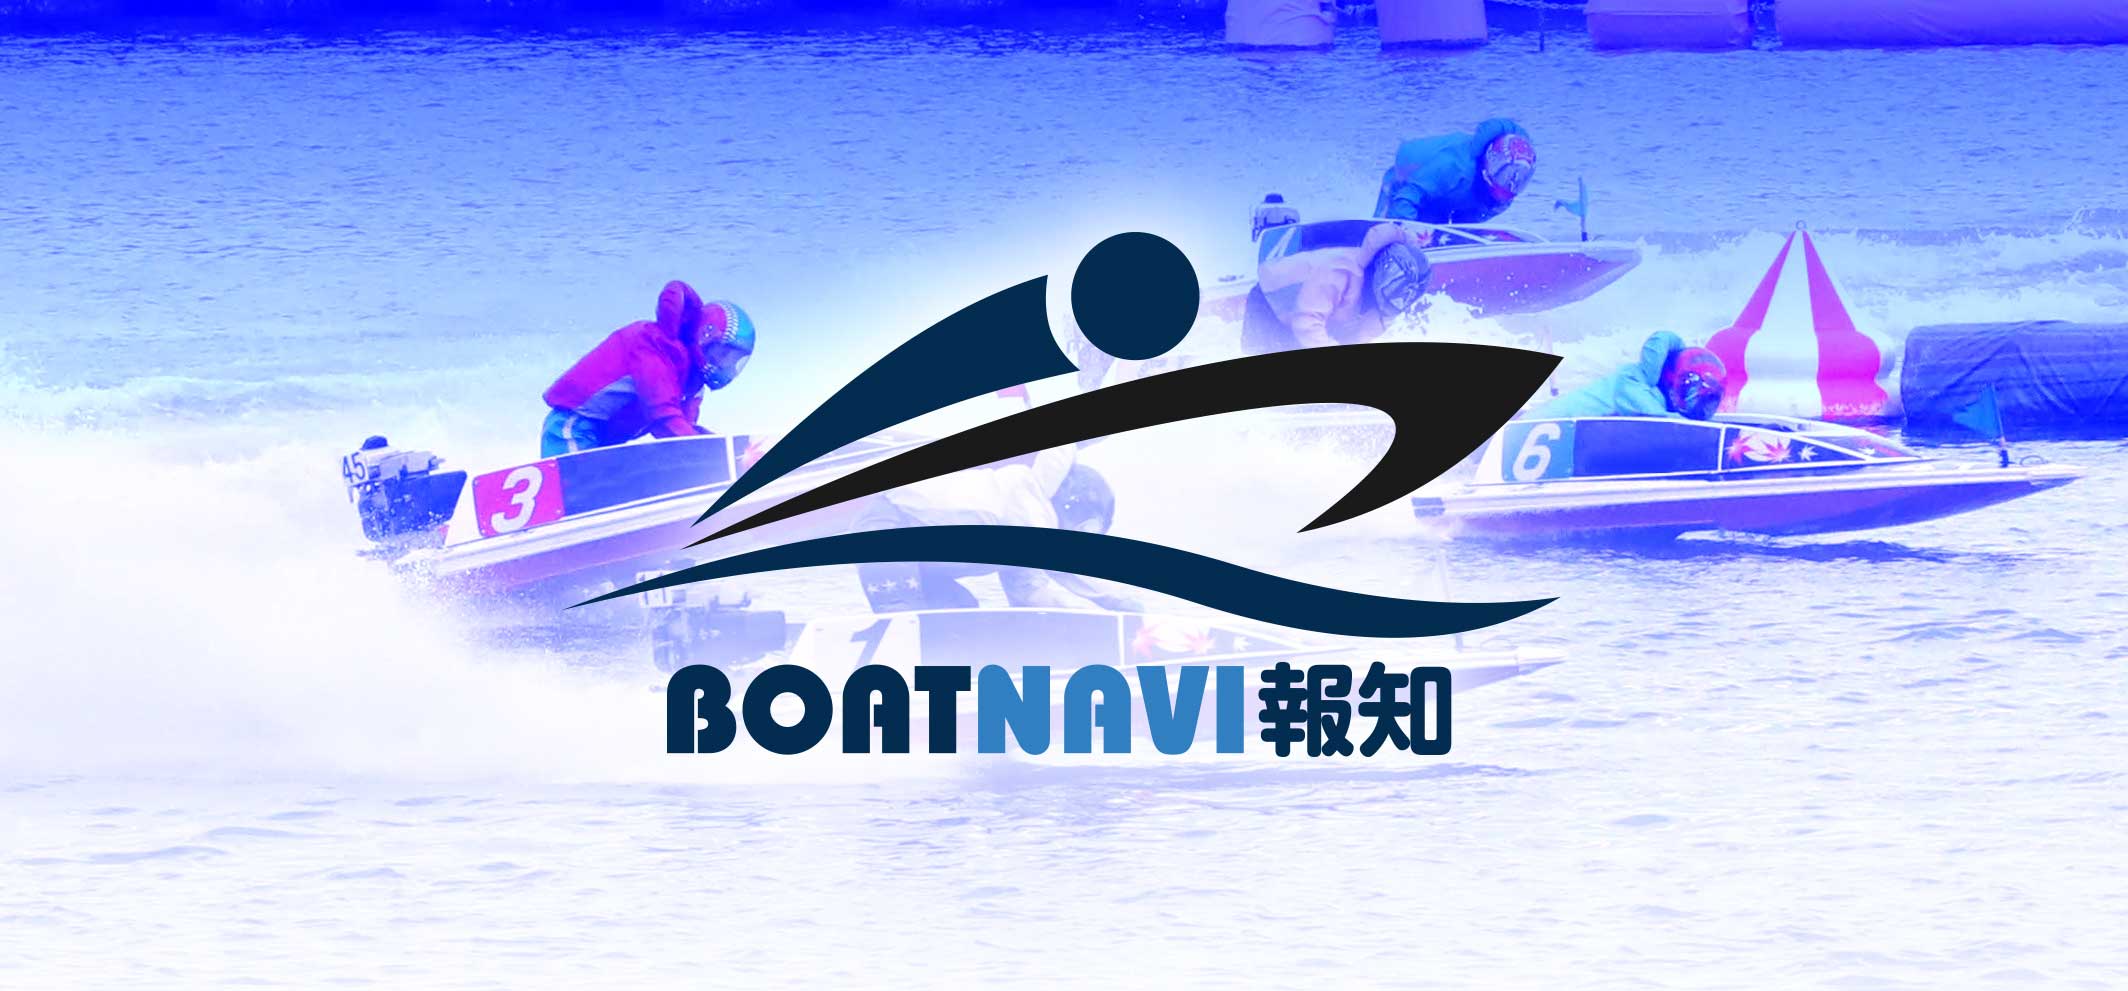 BOATNAVI報知 - ボートレース専門サイト ボートナビ報知 | BOATNAVI 